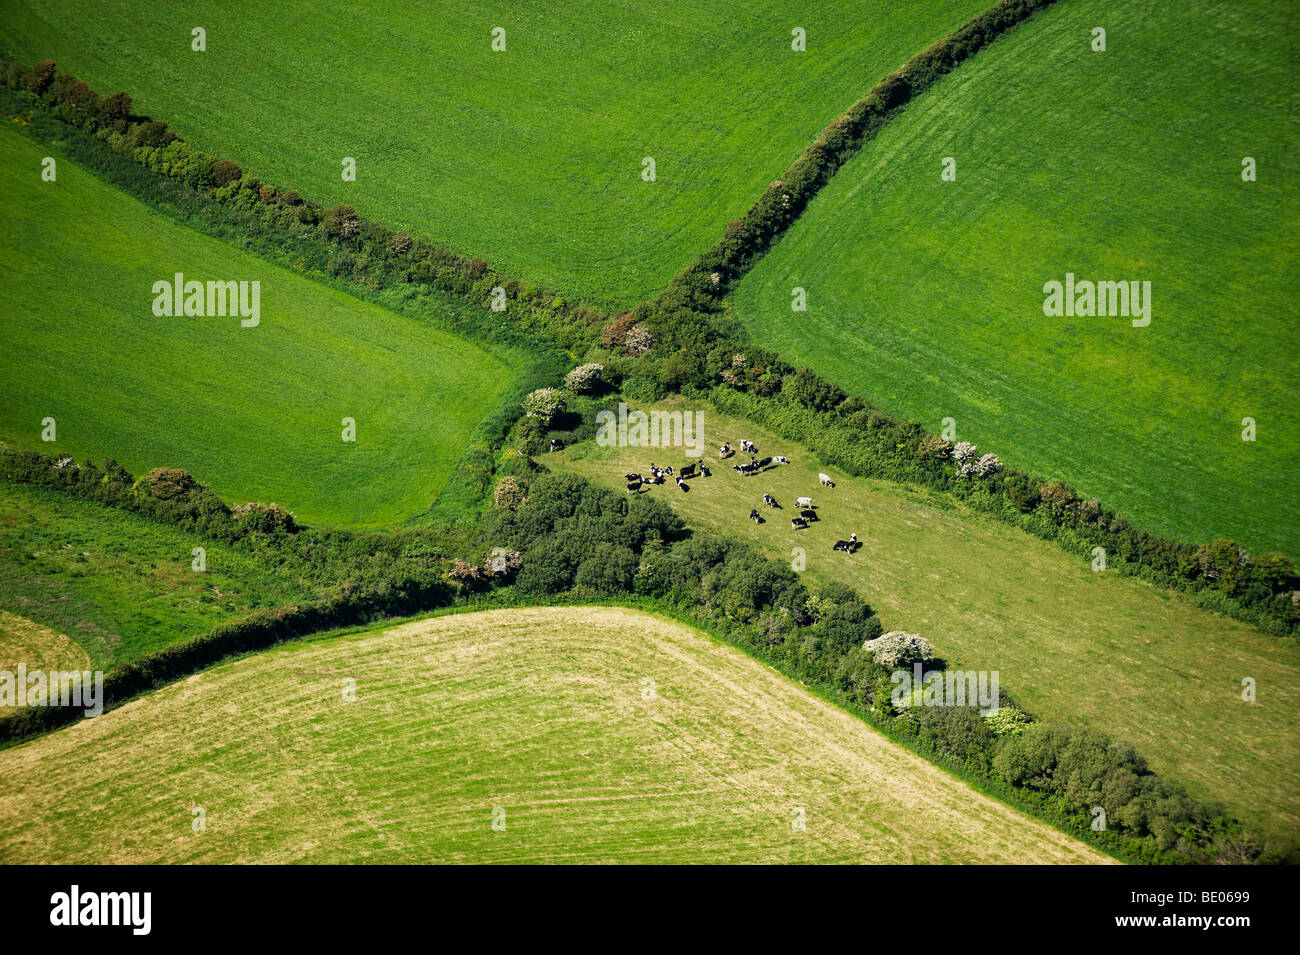 Les champs agricoles de l'Angleterre Vue aérienne Banque D'Images